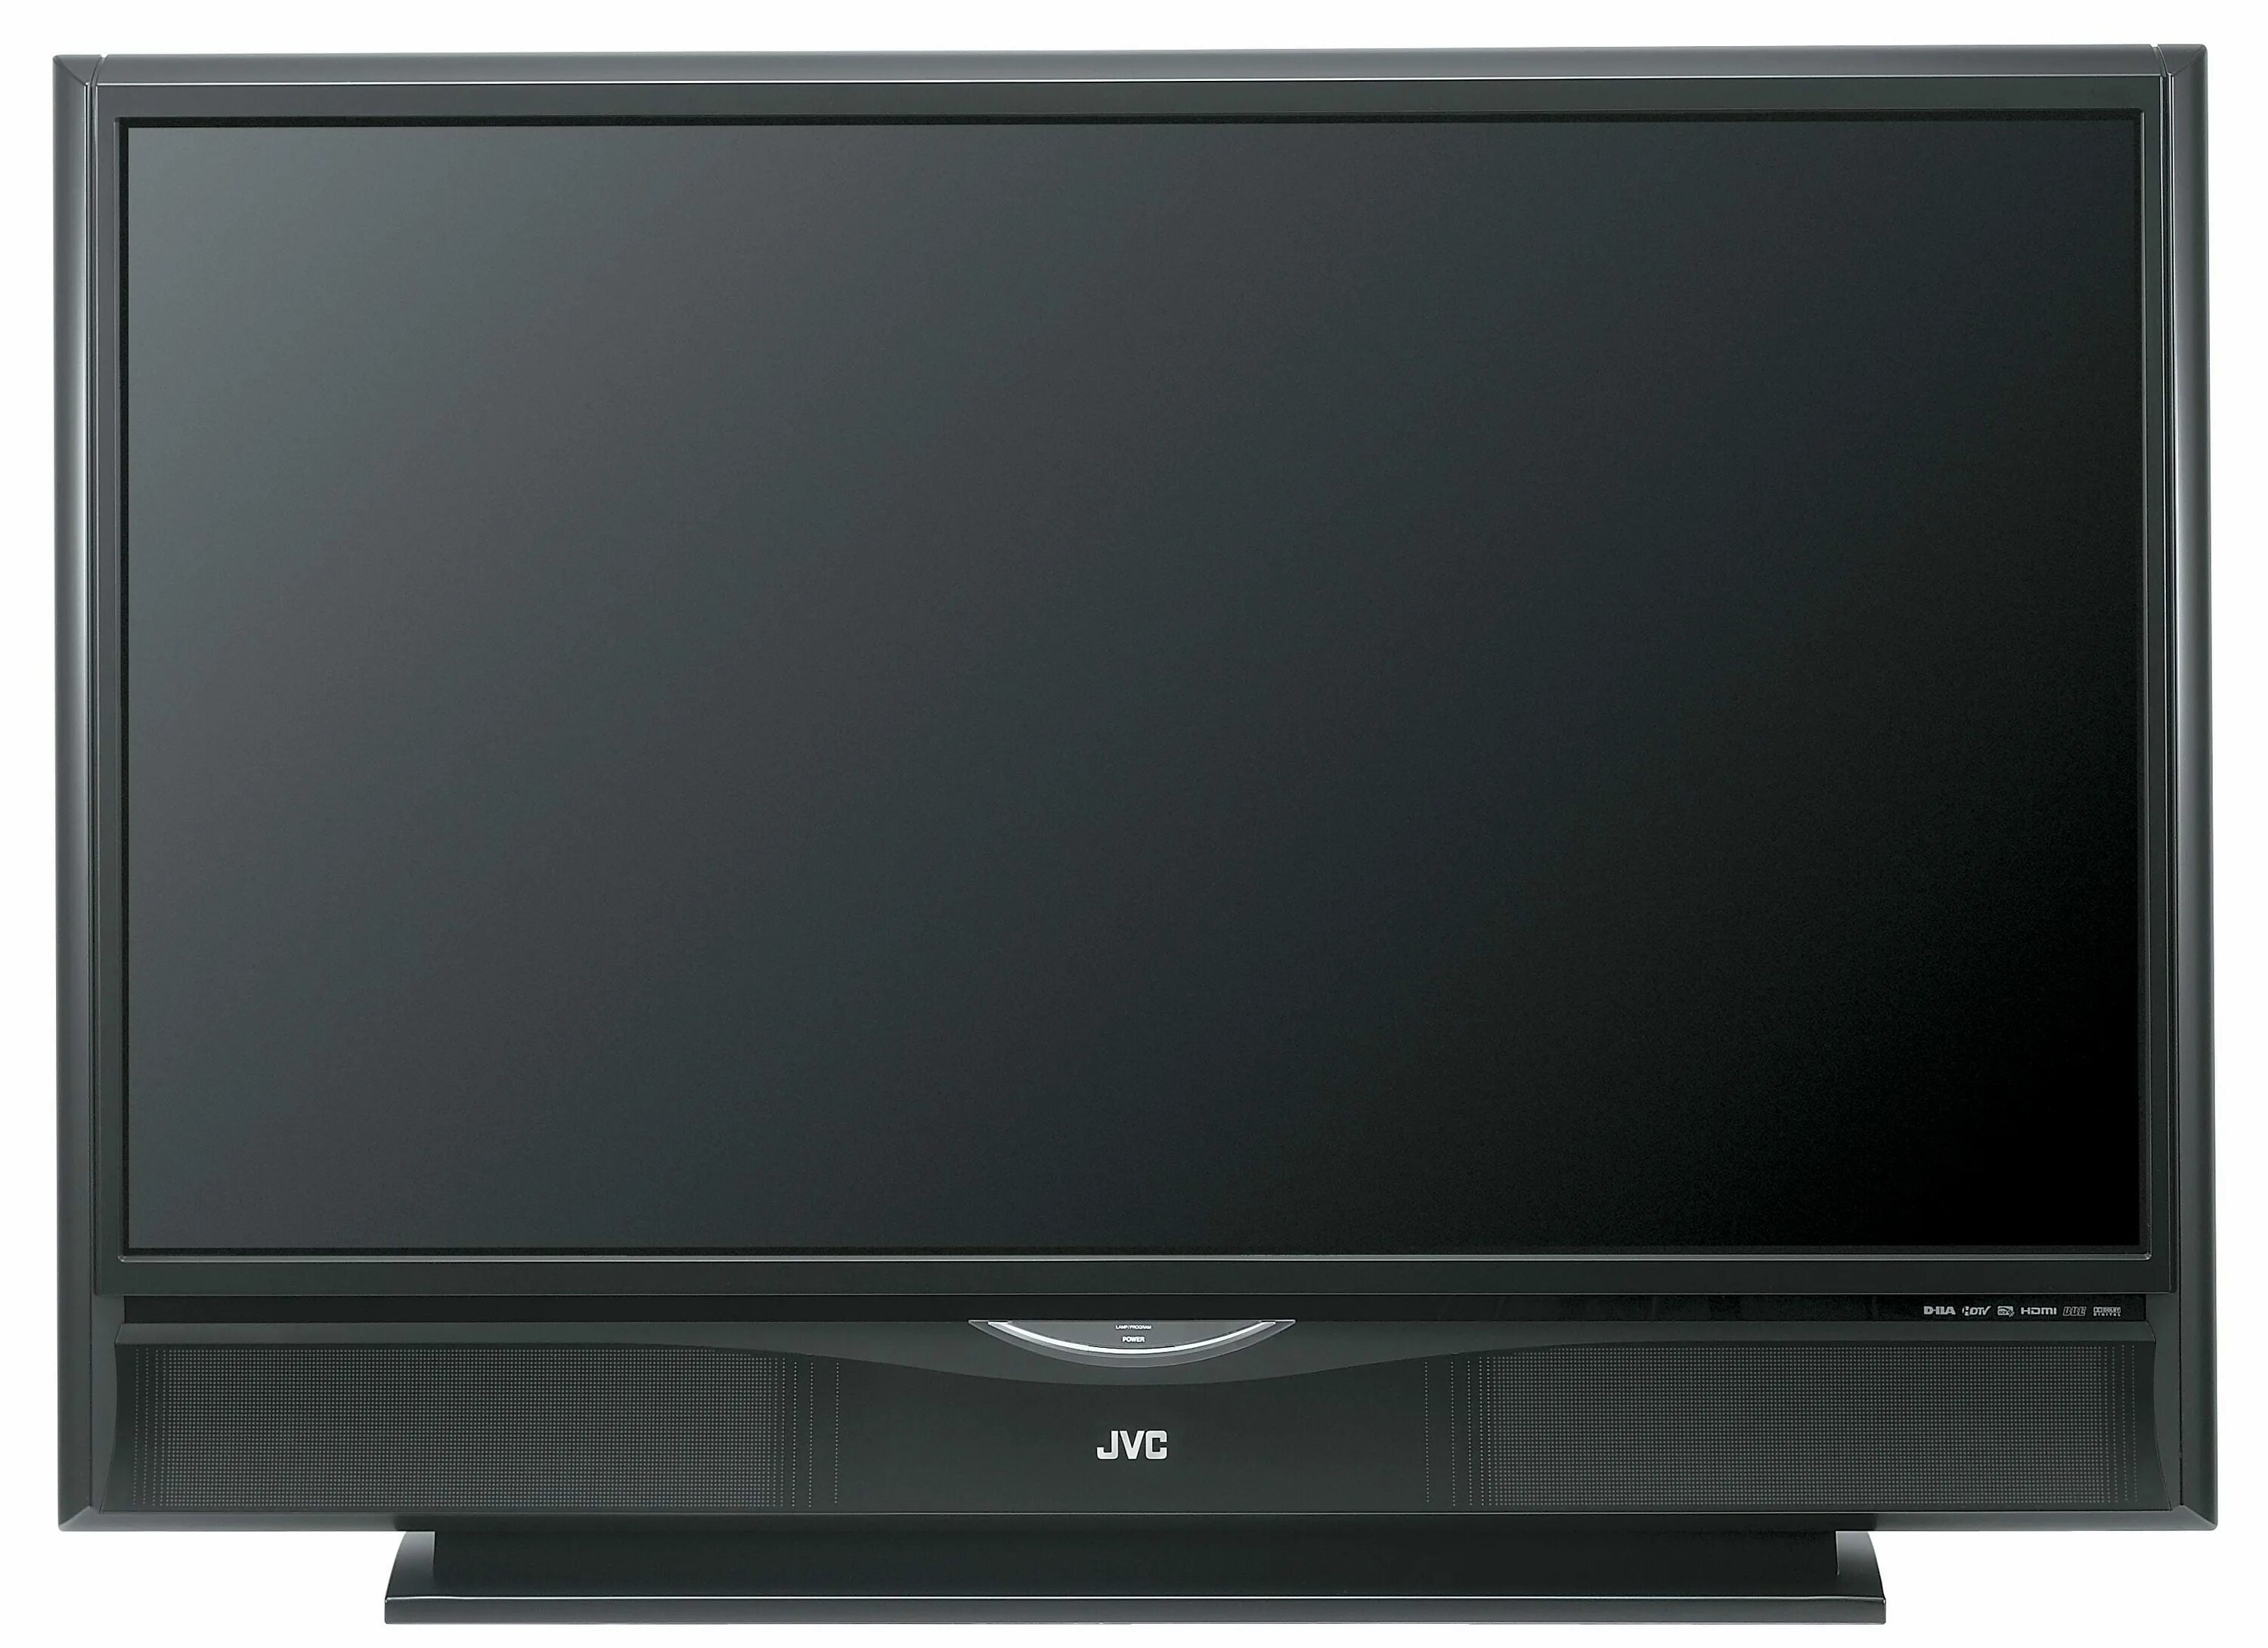 Ремонт телевизоров jvc. Телевизоры JVC g24. JVC g2139. Проекционный телевизор JVC 61 дюйм. Телевизор JVC lt-24m585.